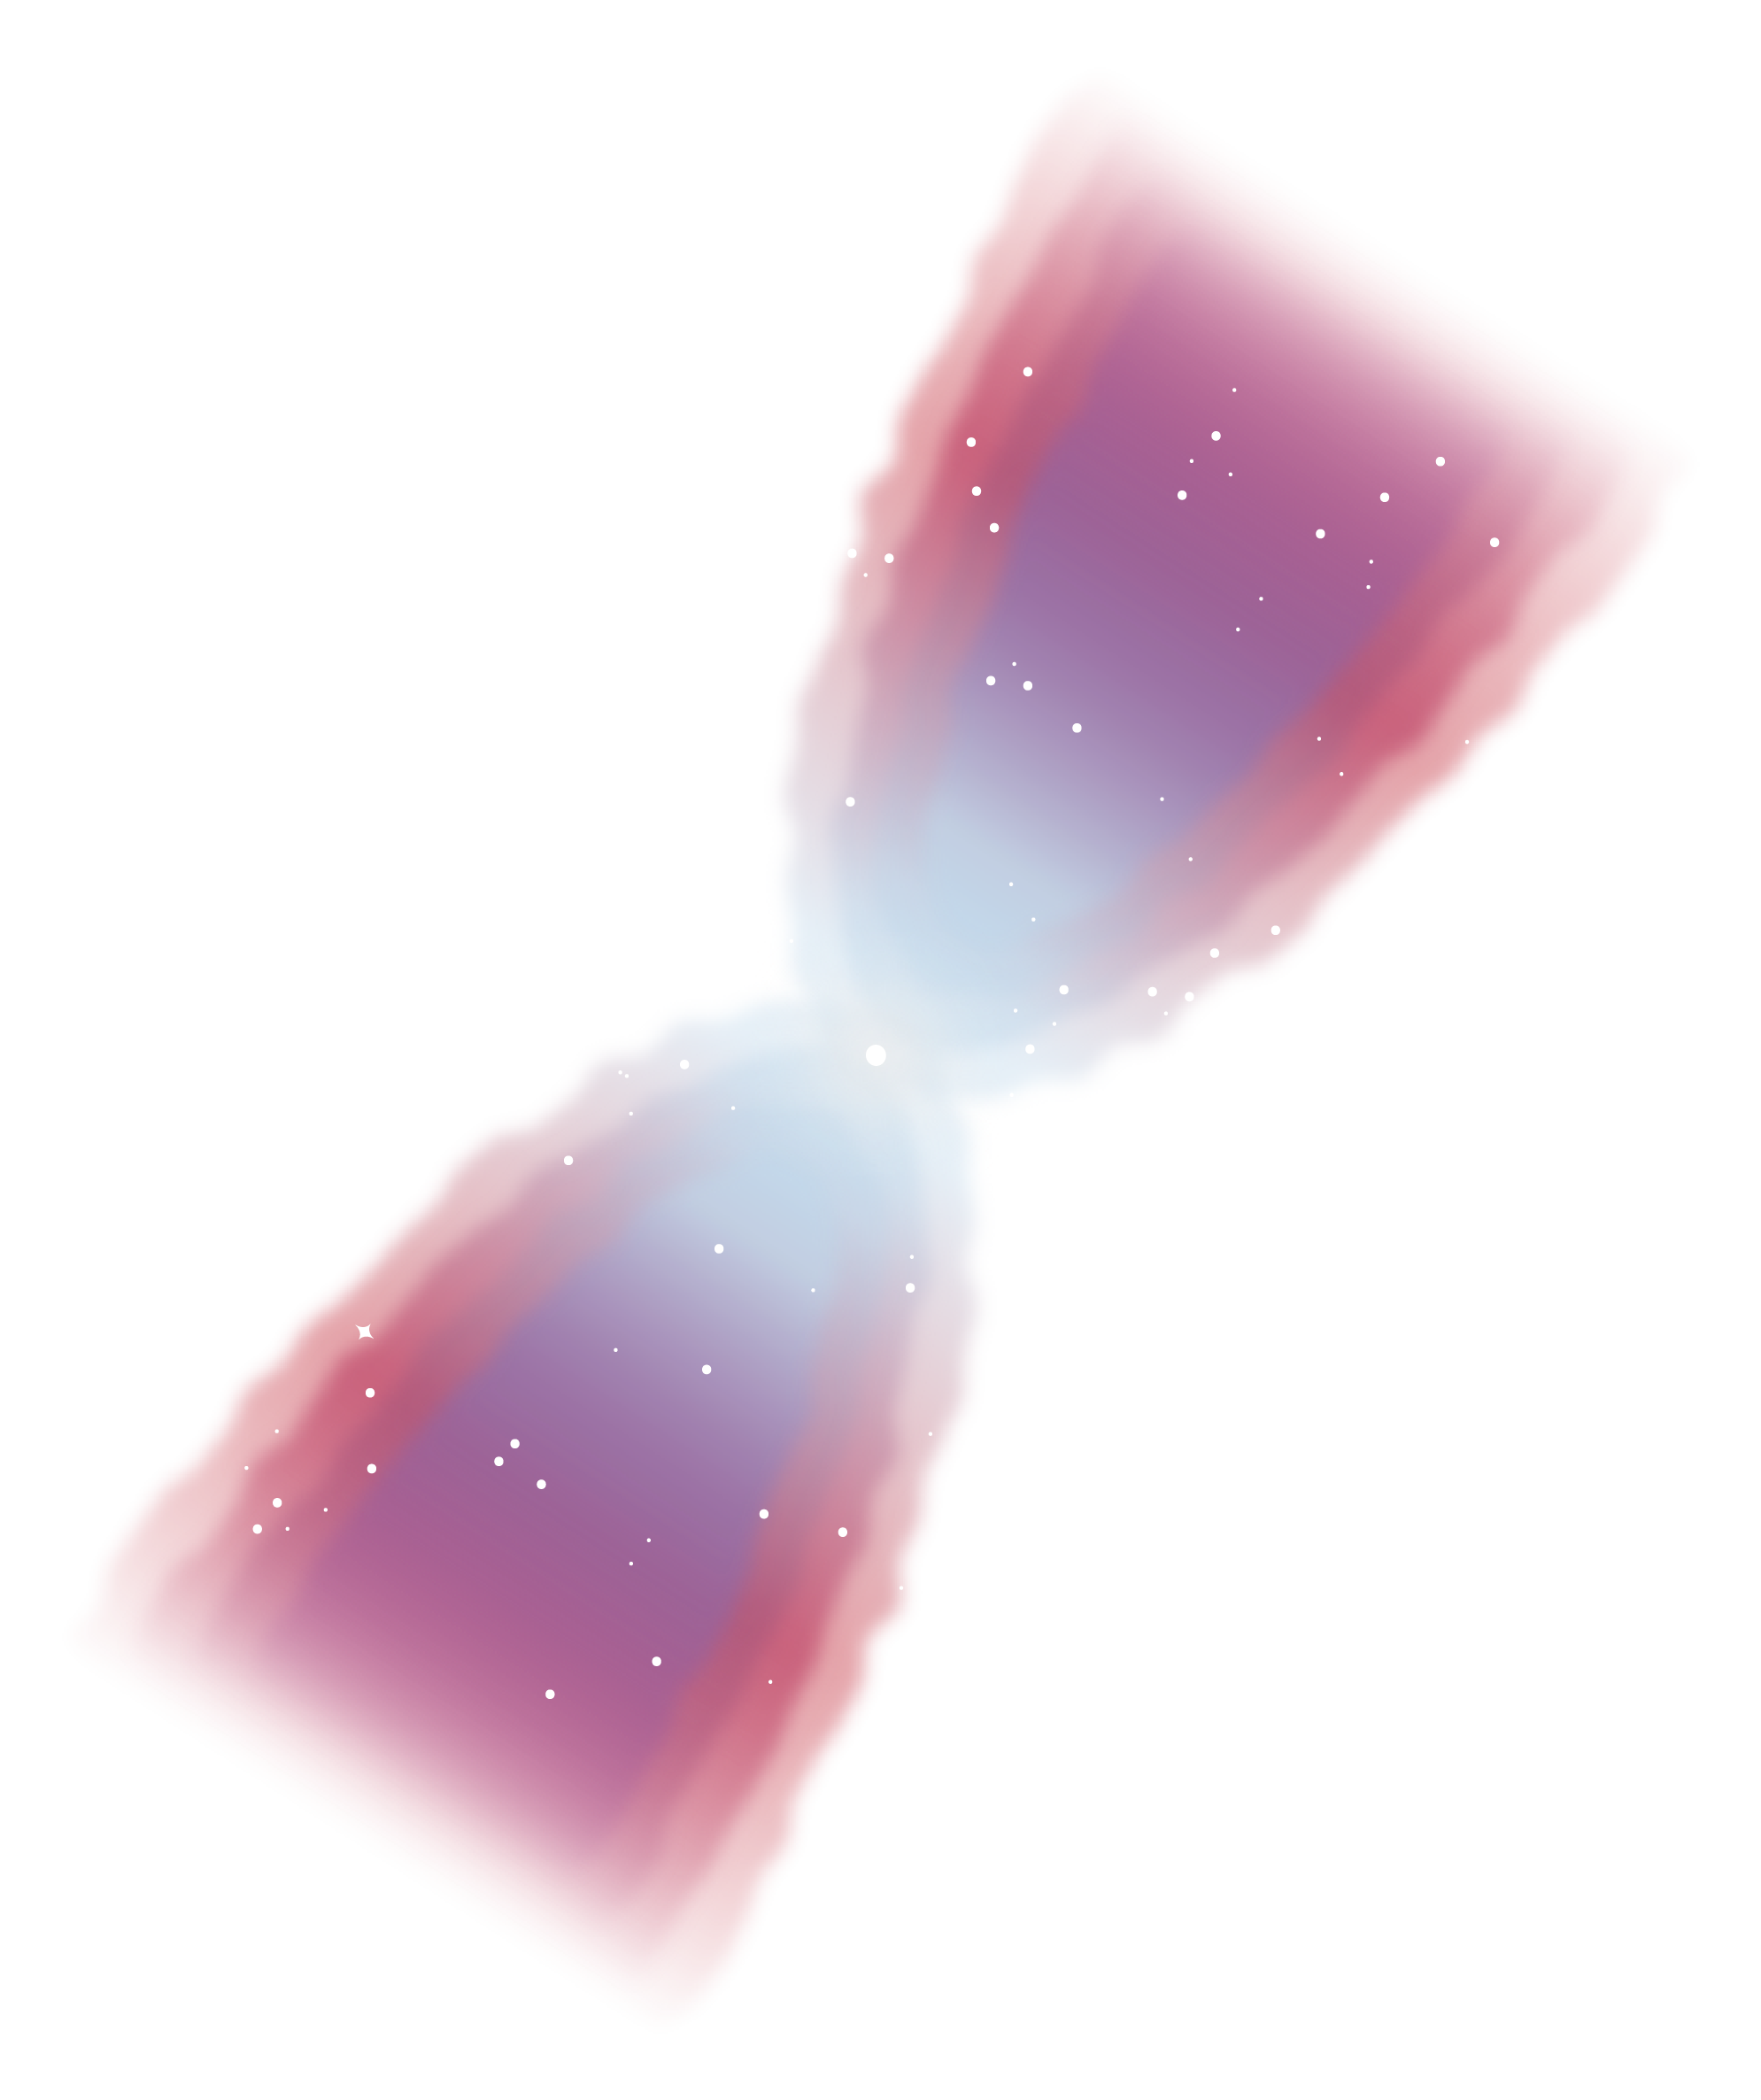 An illustration of a planetary nebula.